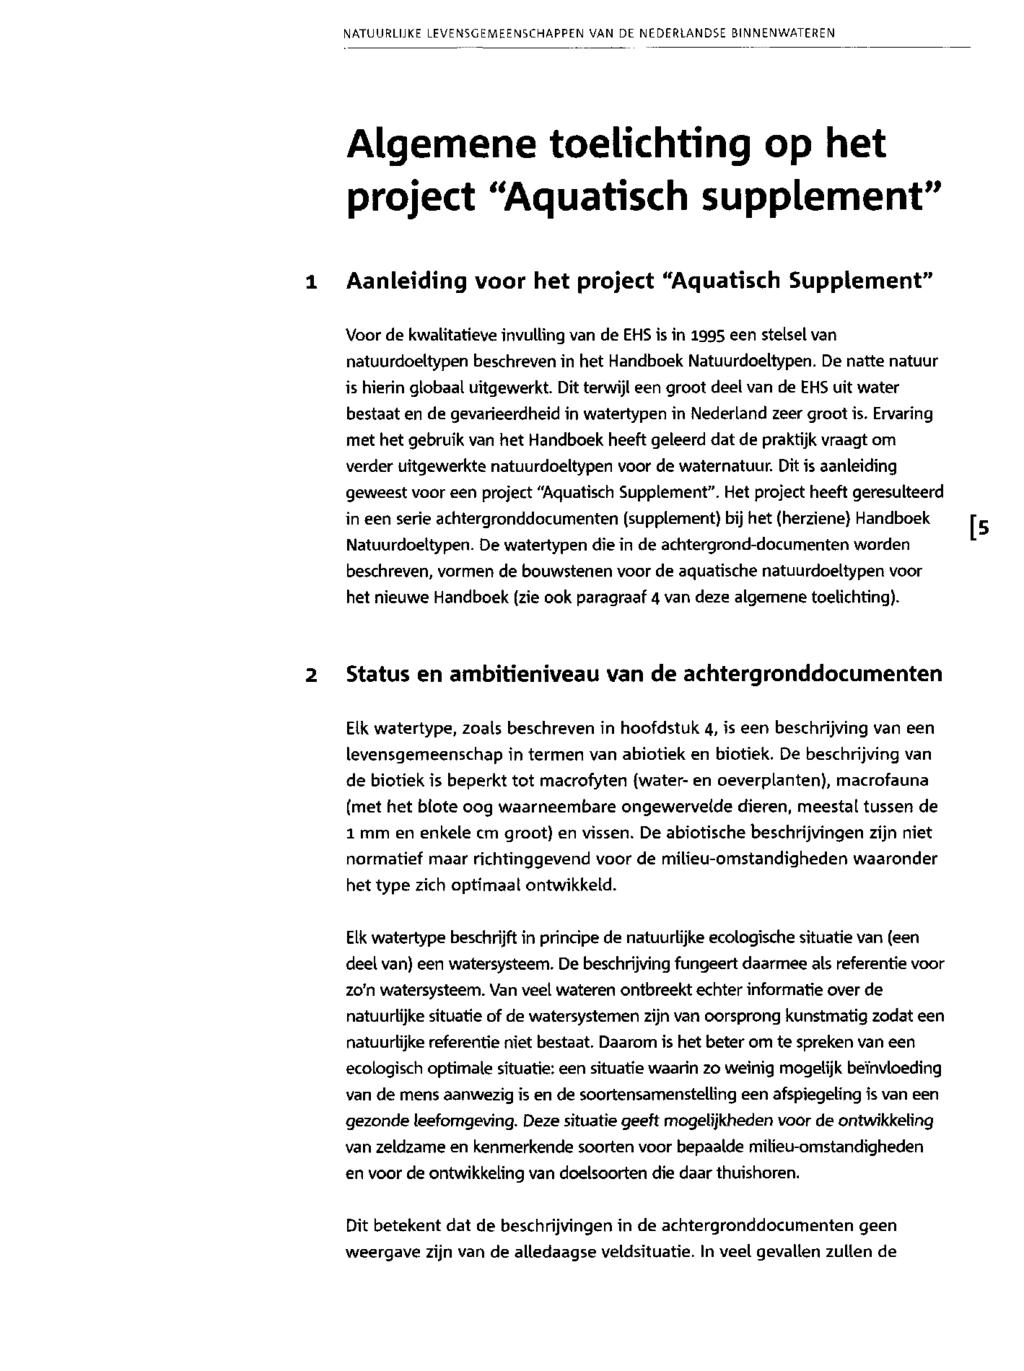 Algemene toelichting ophet project "Aquatisch supplement" 1 Aanleiding voor het project "Aquatisch Supplement" Voor de kwalitatieve invulling van de EH5 is in 1995 een stelsel van natuurdoeltypen